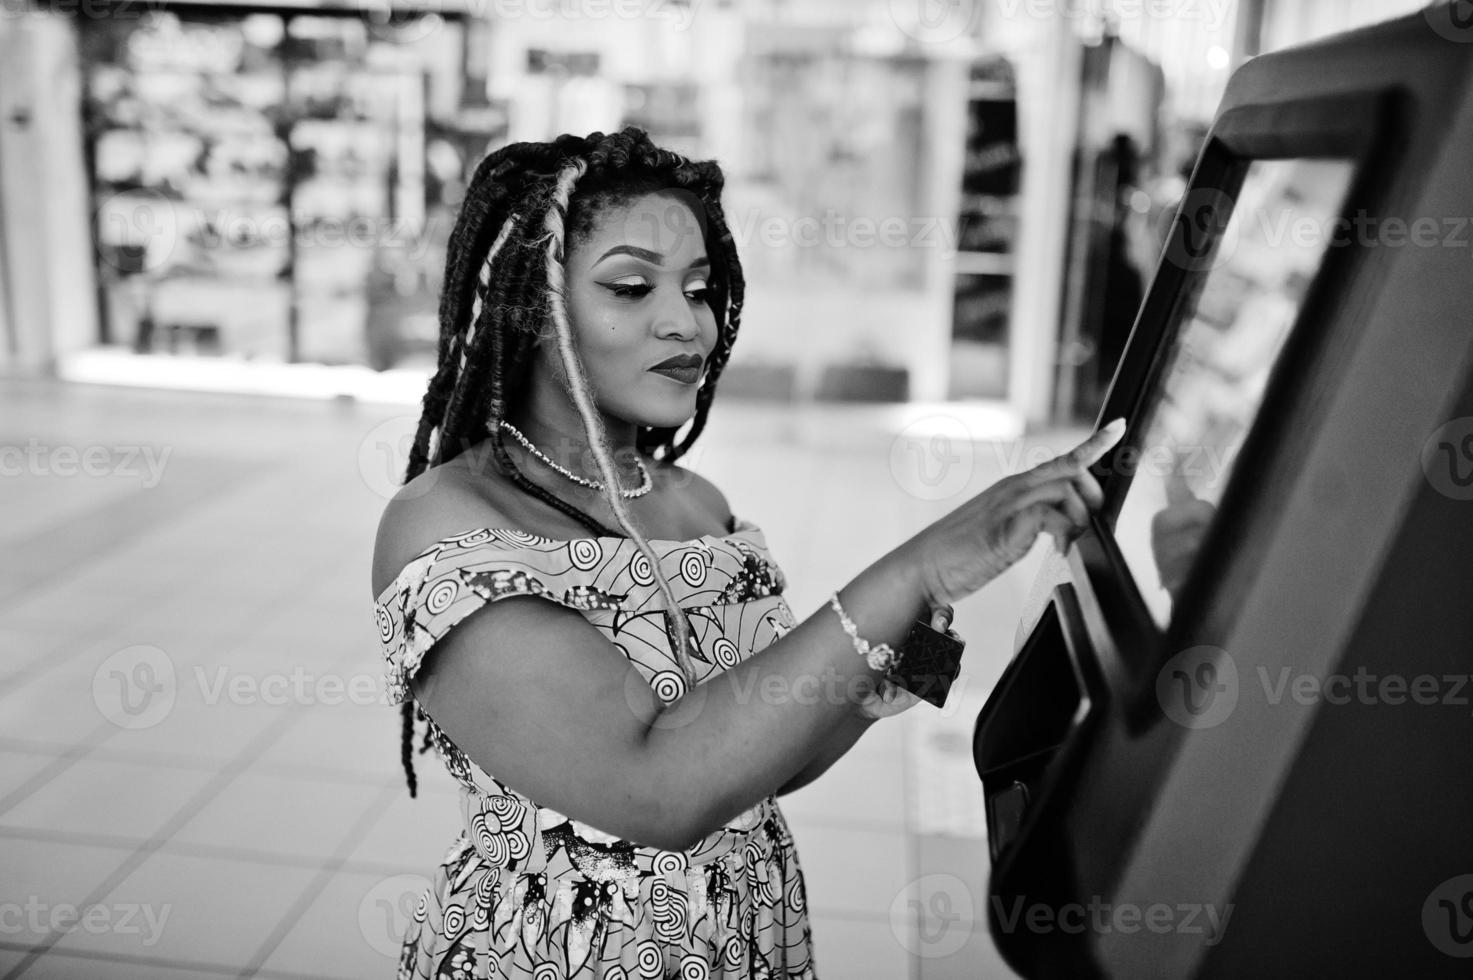 jolie fille afro-américaine de petite taille avec des dreadlocks, porter une robe jaune colorée, contre un guichet automatique avec carte de crédit à portée de main. noir et blanc. photo